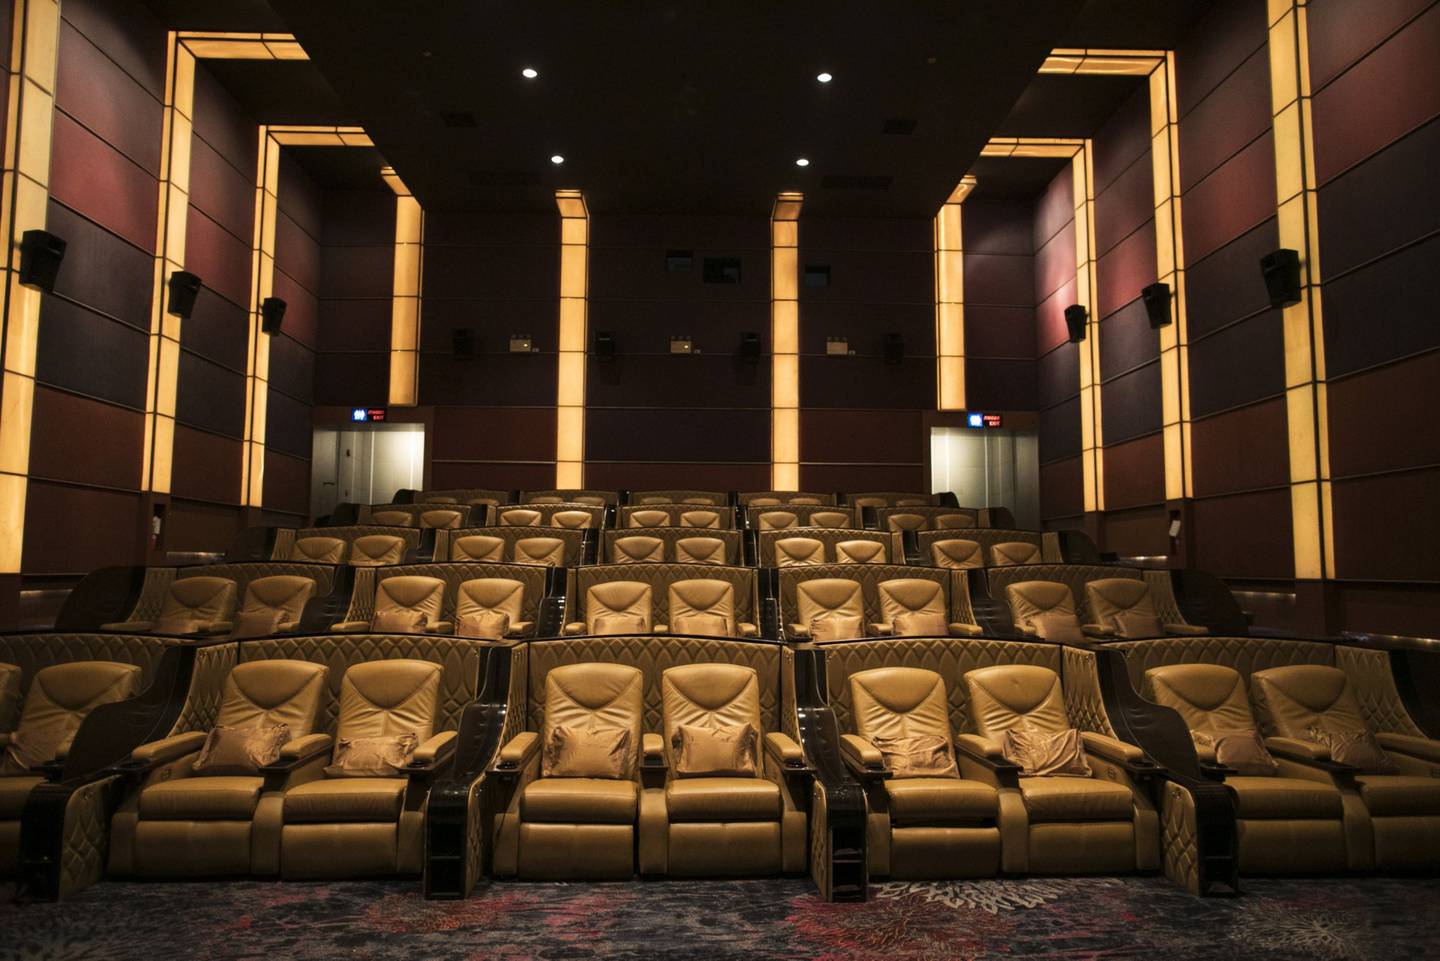 Asientos de pie dentro de una sala en el cine Paragon Cineplex, operado por Major Cineplex Group Pcl, en Bangkok, Tailandia, el sábado 11 de mayo de 2019. Fotógrafo: Brent Lewin/Bloomberg dfd